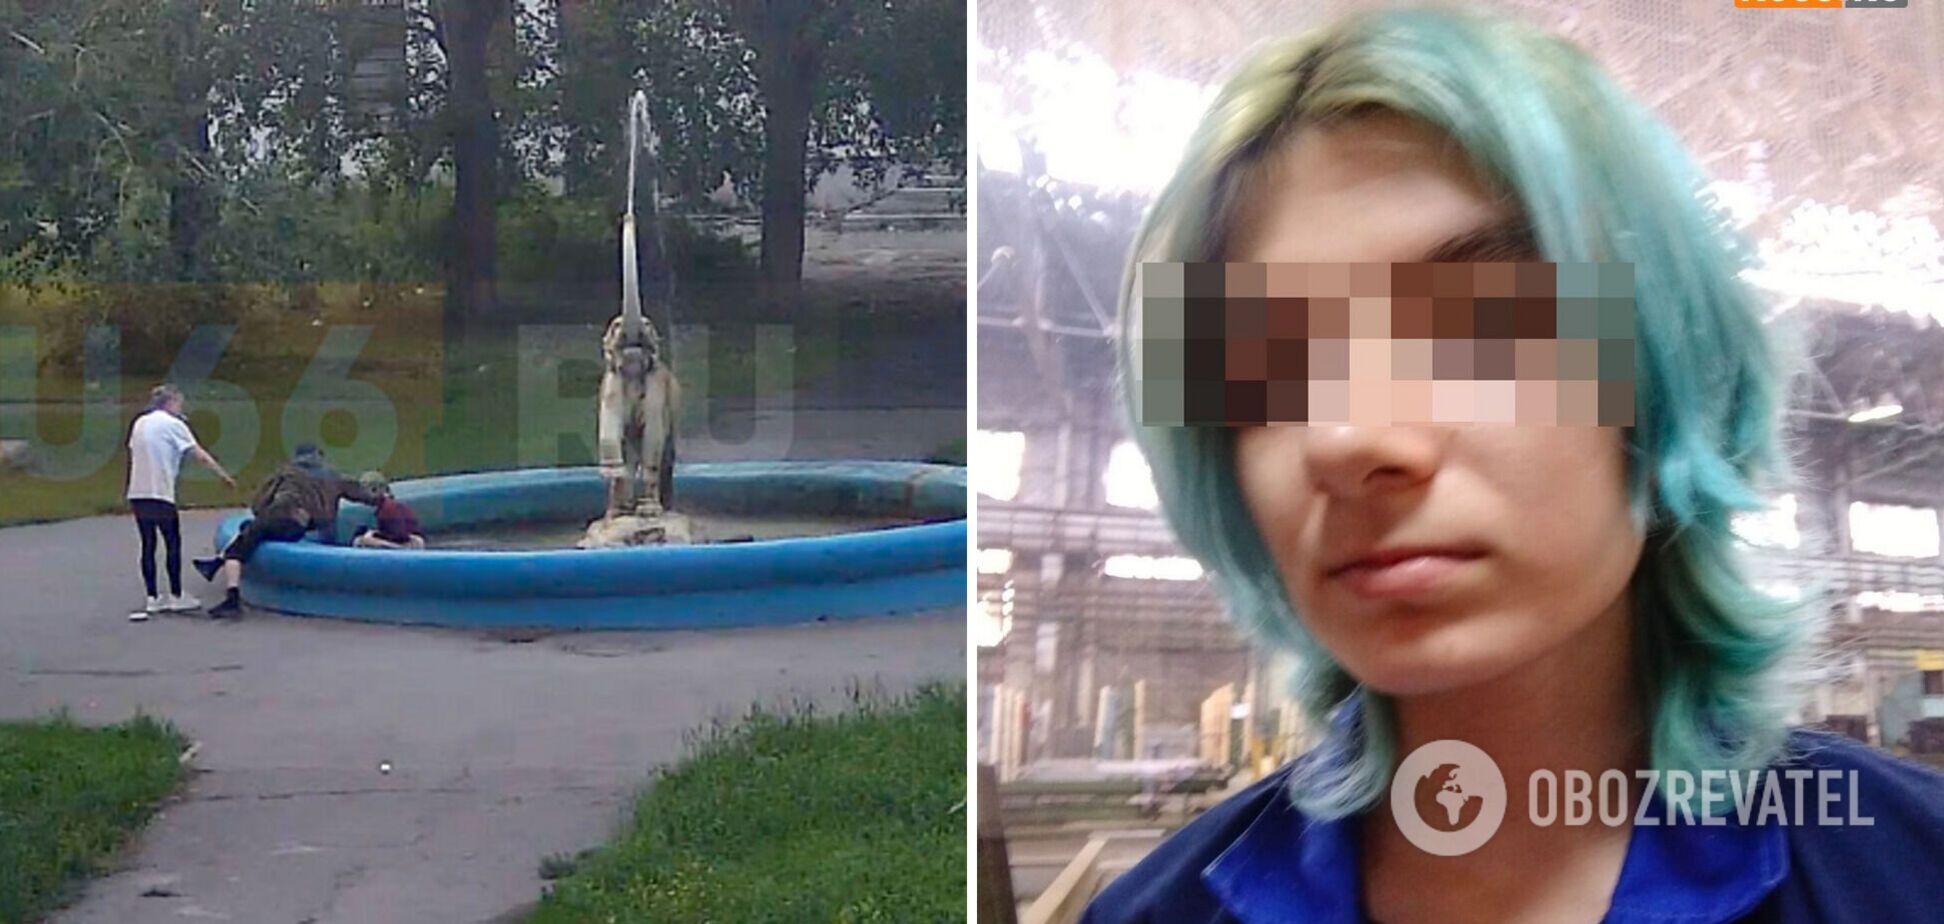 'Похожа на еврейку': в Свердловской области РФ двое военных пытались утопить девушку в фонтане. Видео